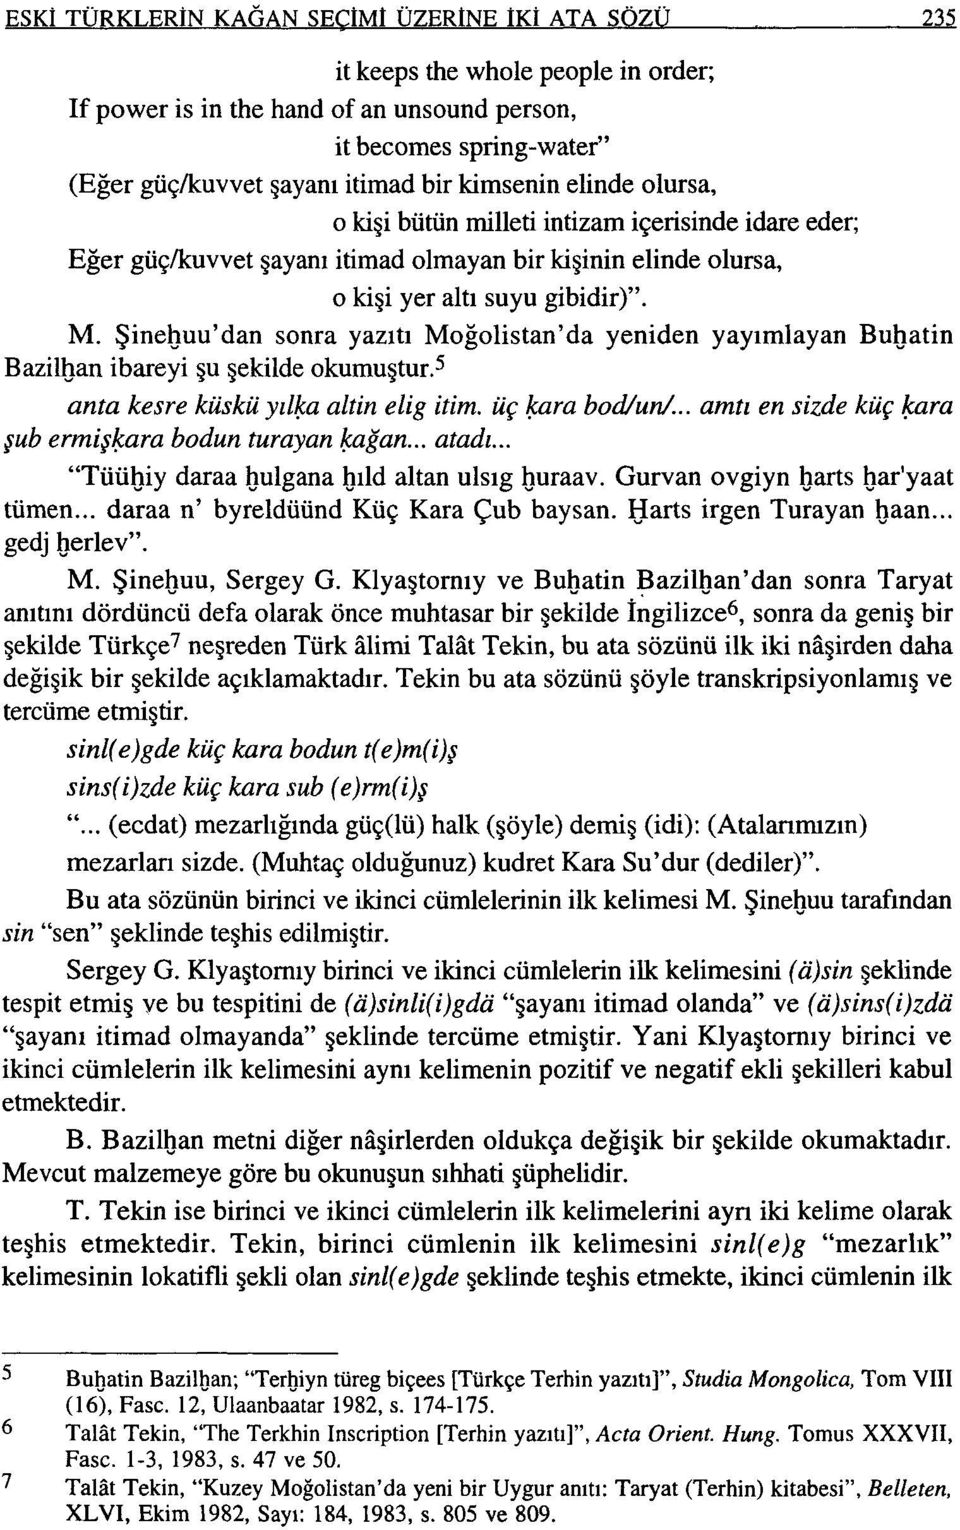 Şineguu'dan sonra yazıtı Moğolistan'da yeniden yayımiayan Bugatin Bazilgan ibareyi şu şekilde okumuştur.5 anta kesre küskü yıl~a altin elig itim. üç ~ara bodlun/.